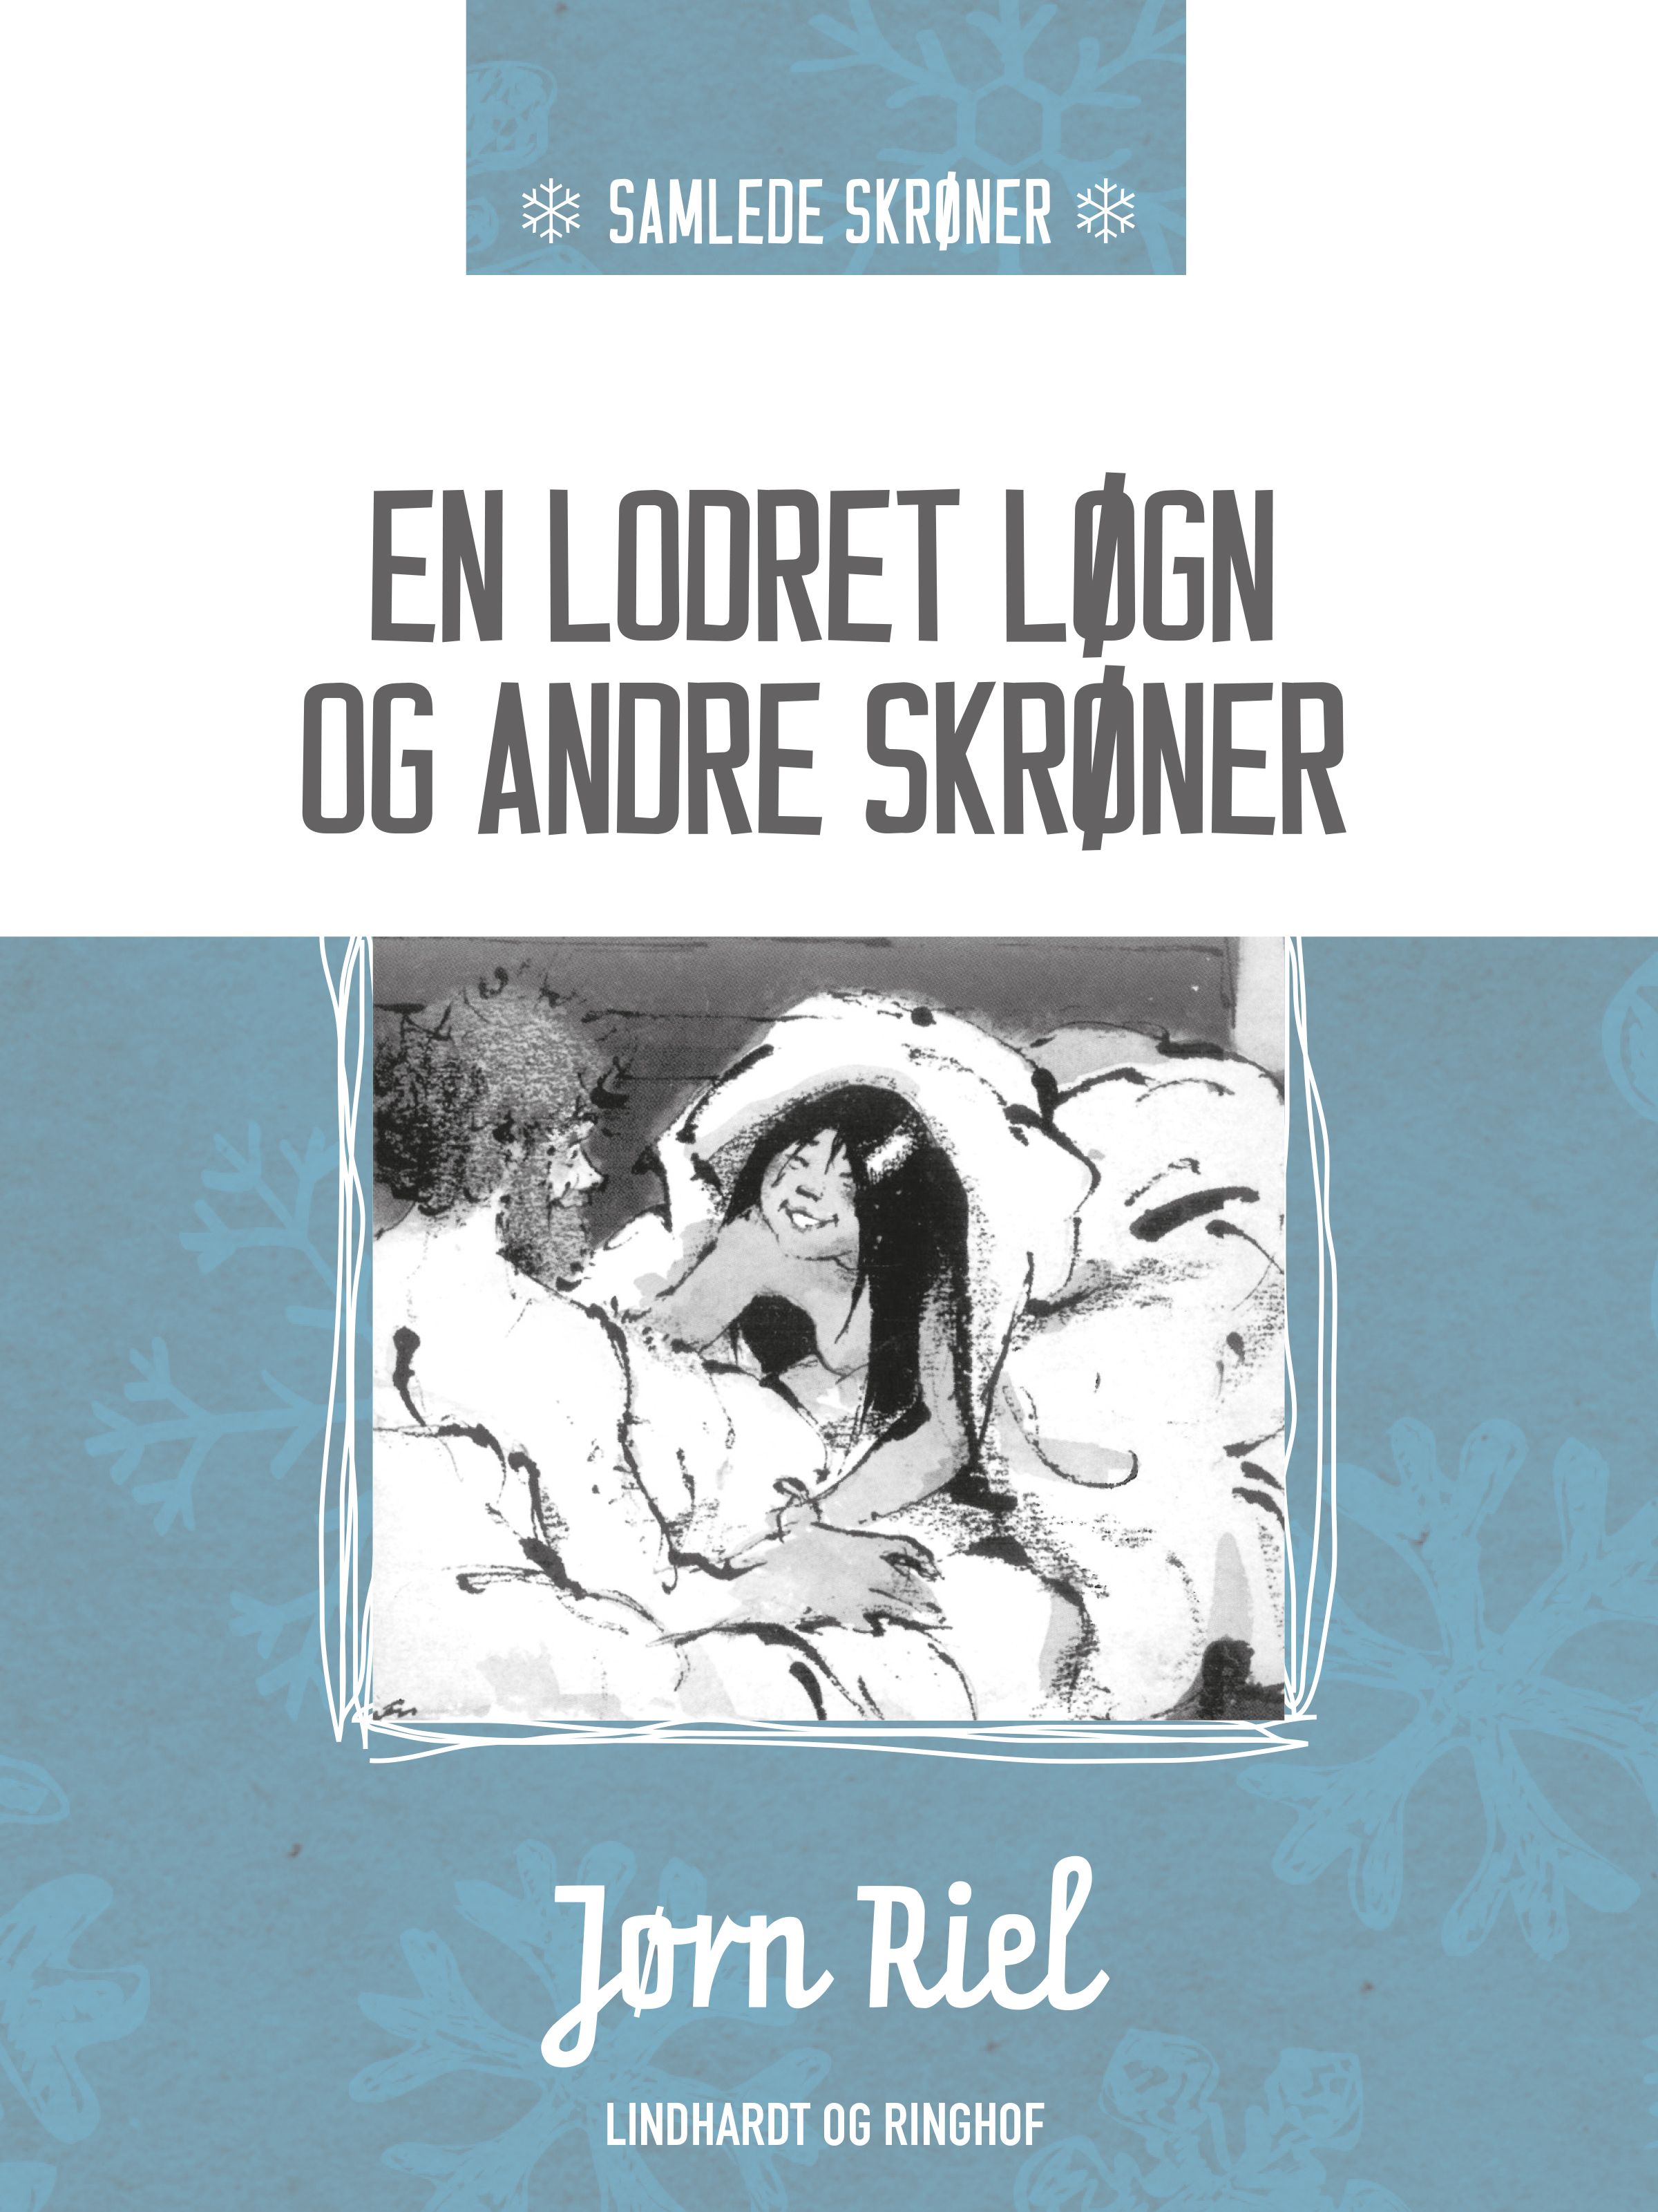 En lodret løgn og andre skrøner, e-bog af Jørn Riel